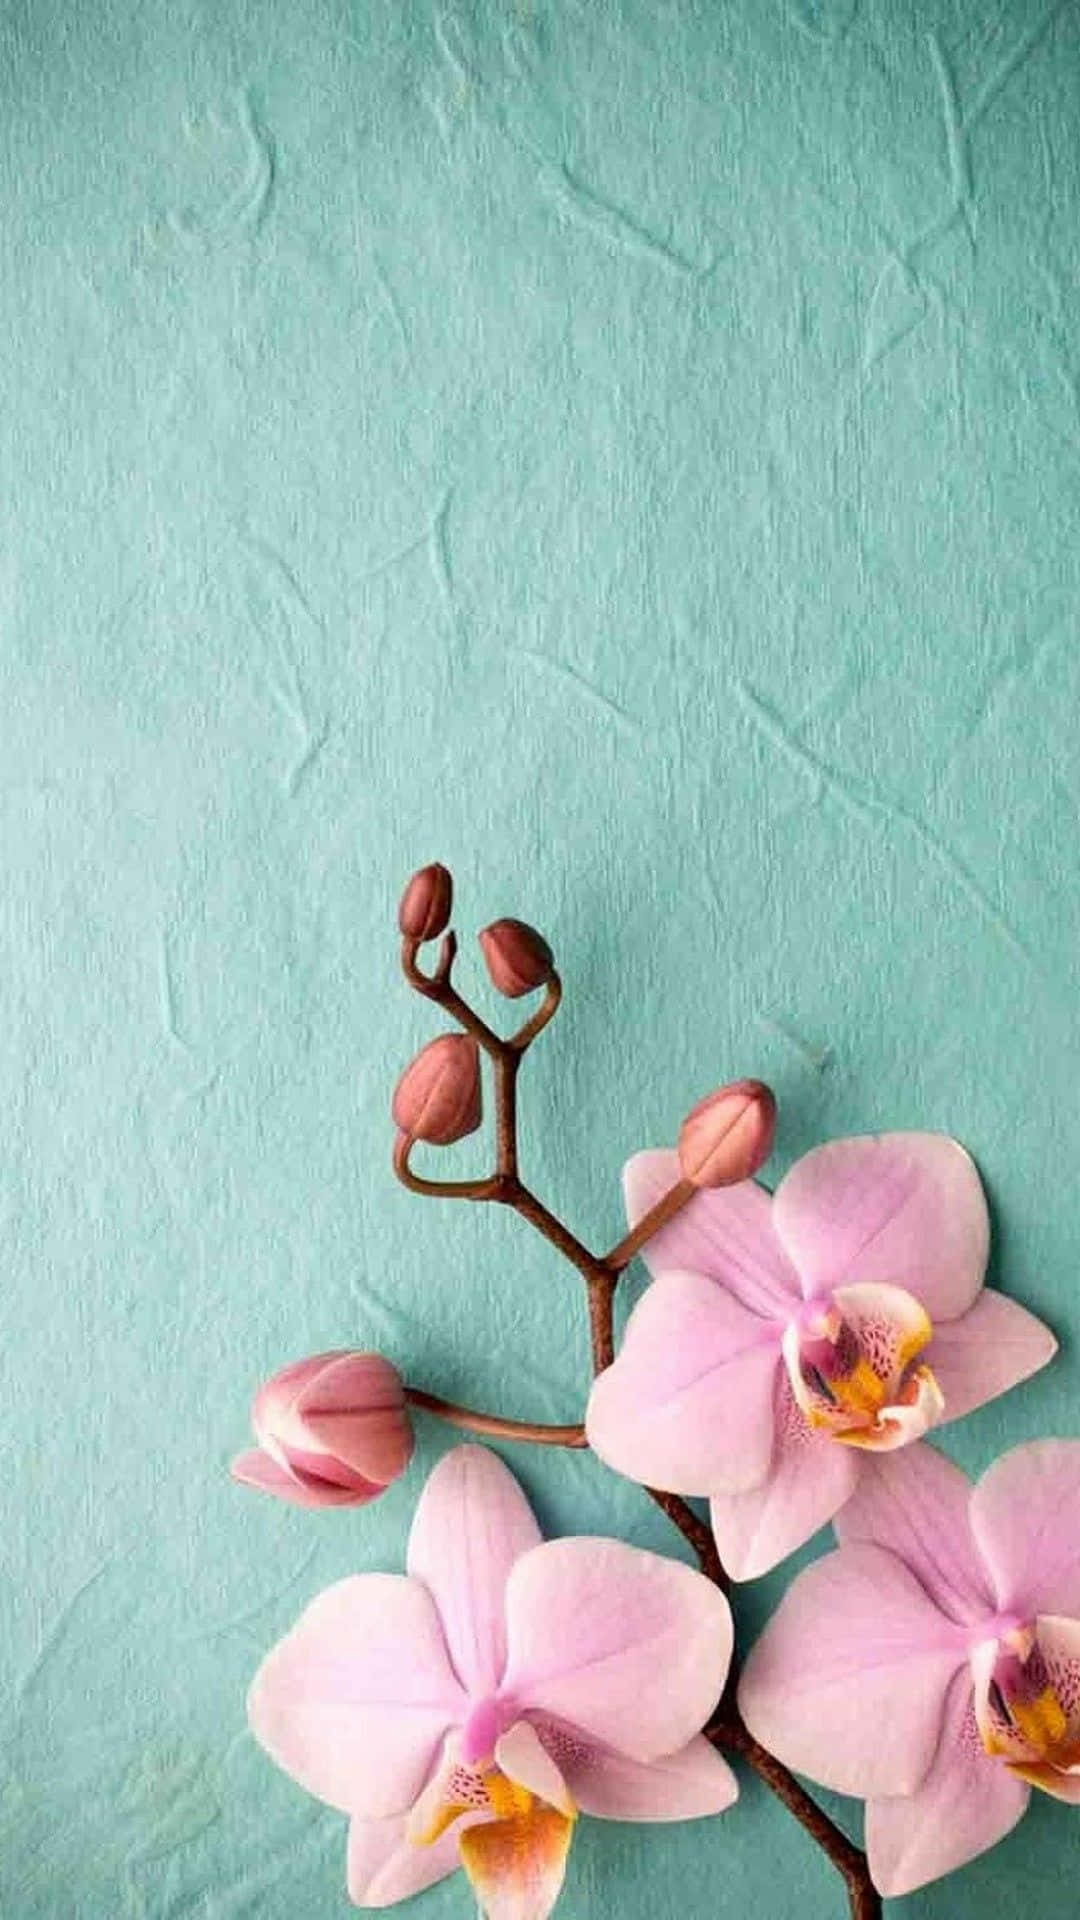 Fondode Pantalla Para Teléfono Con Planta De Orquídea Rosa. Fondo de pantalla